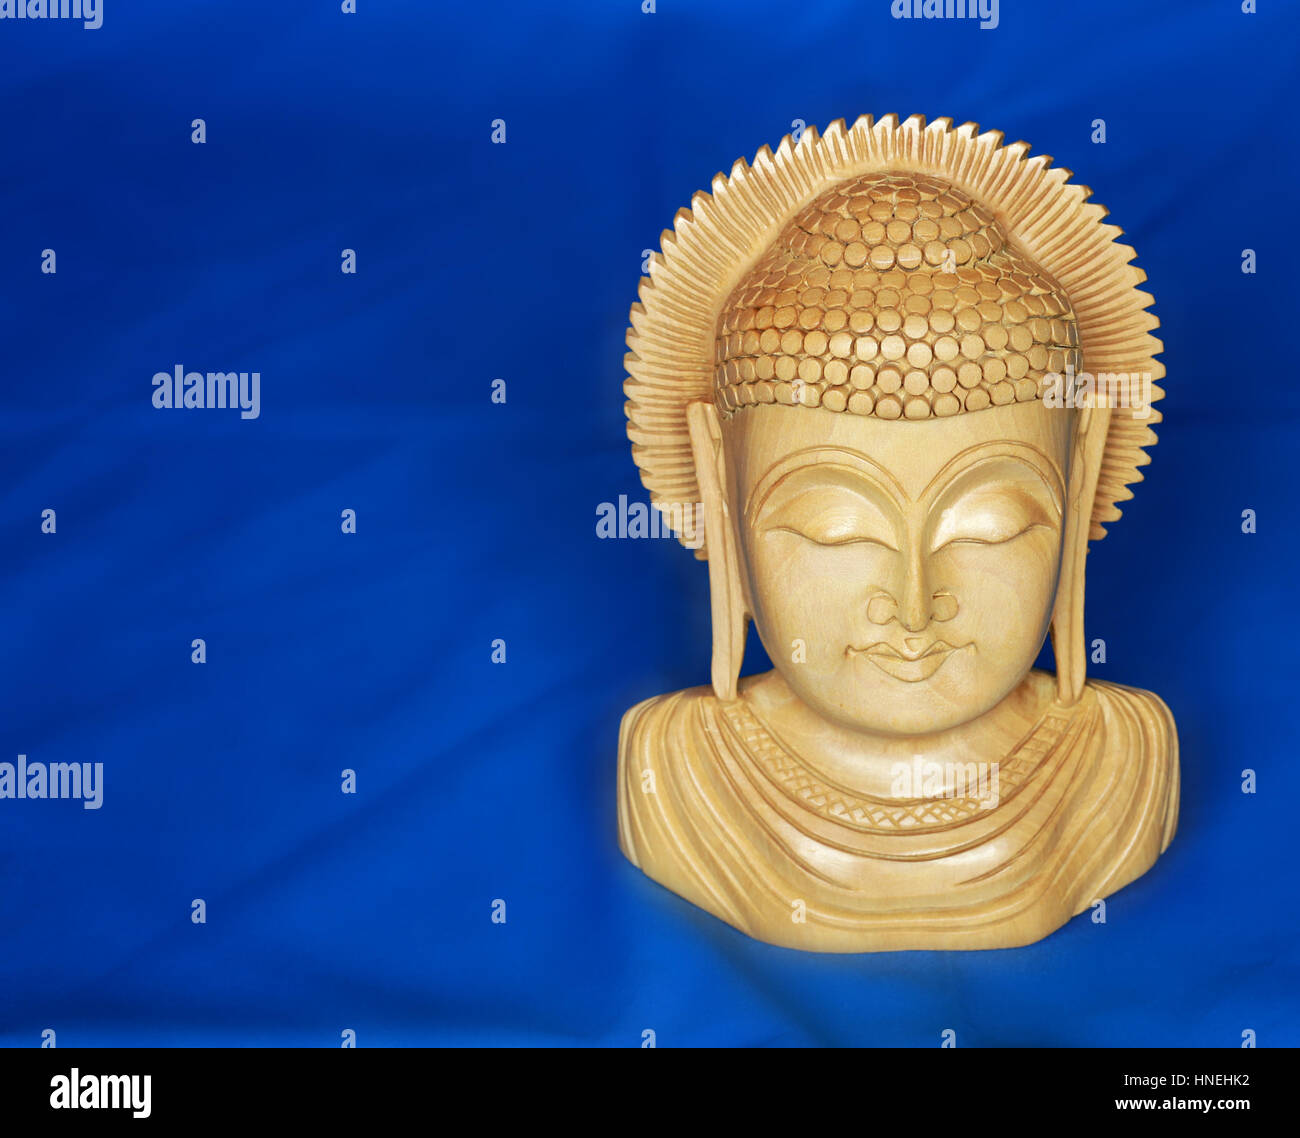 Sandalwood Buddha on blue background Stock Photo